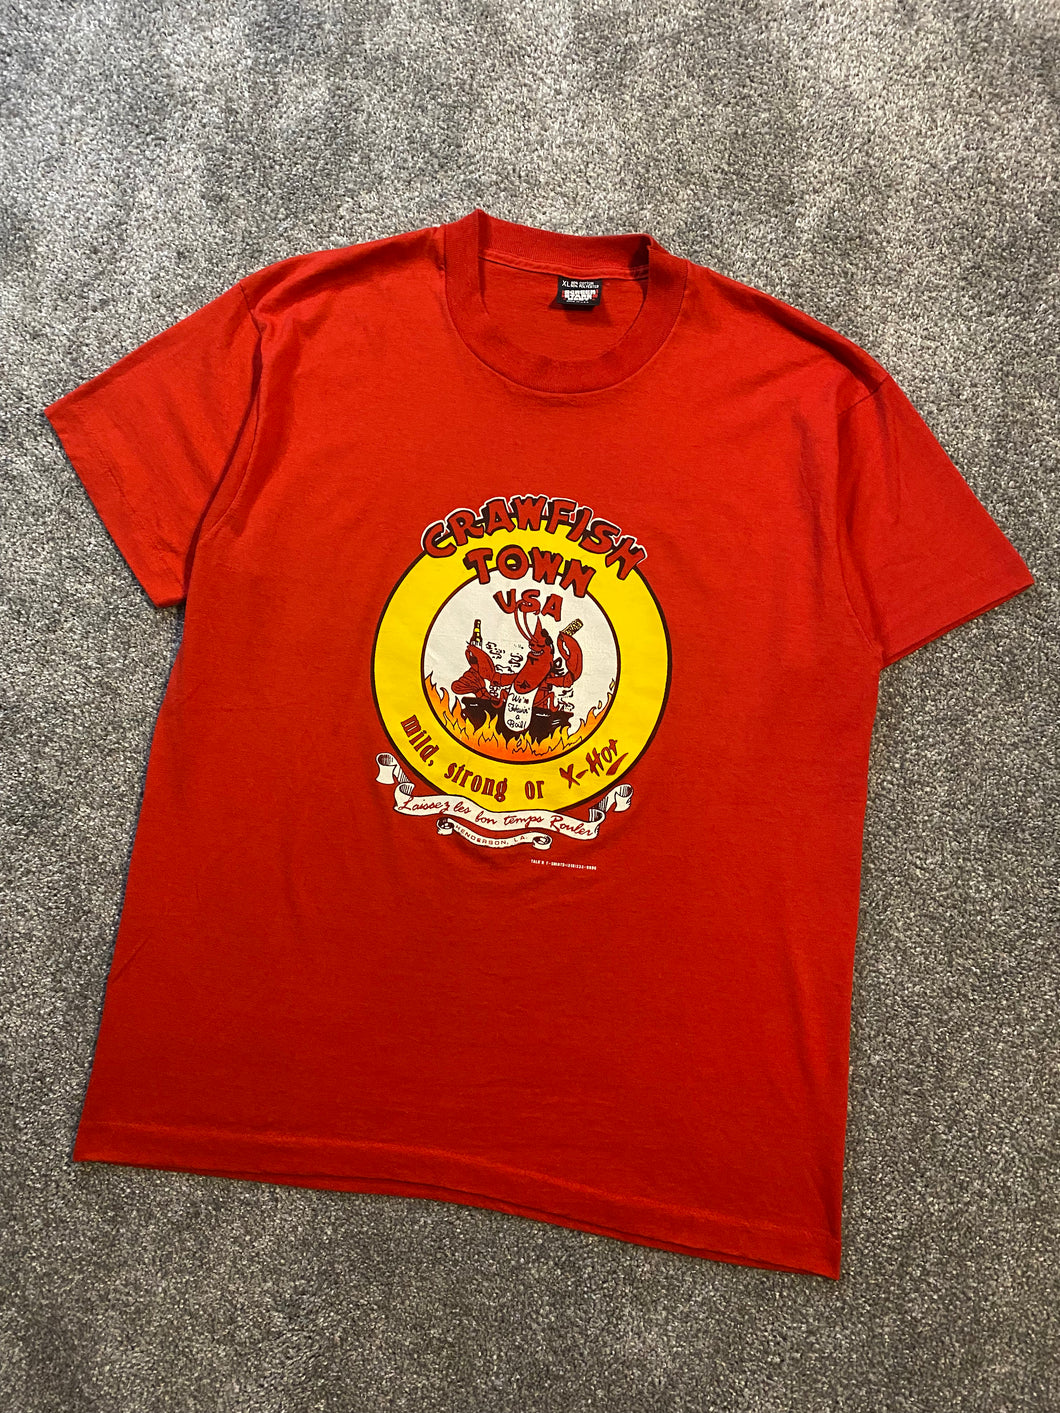 Vintage Crawfish Town Louisiana Graphic Tee Shirt - Large